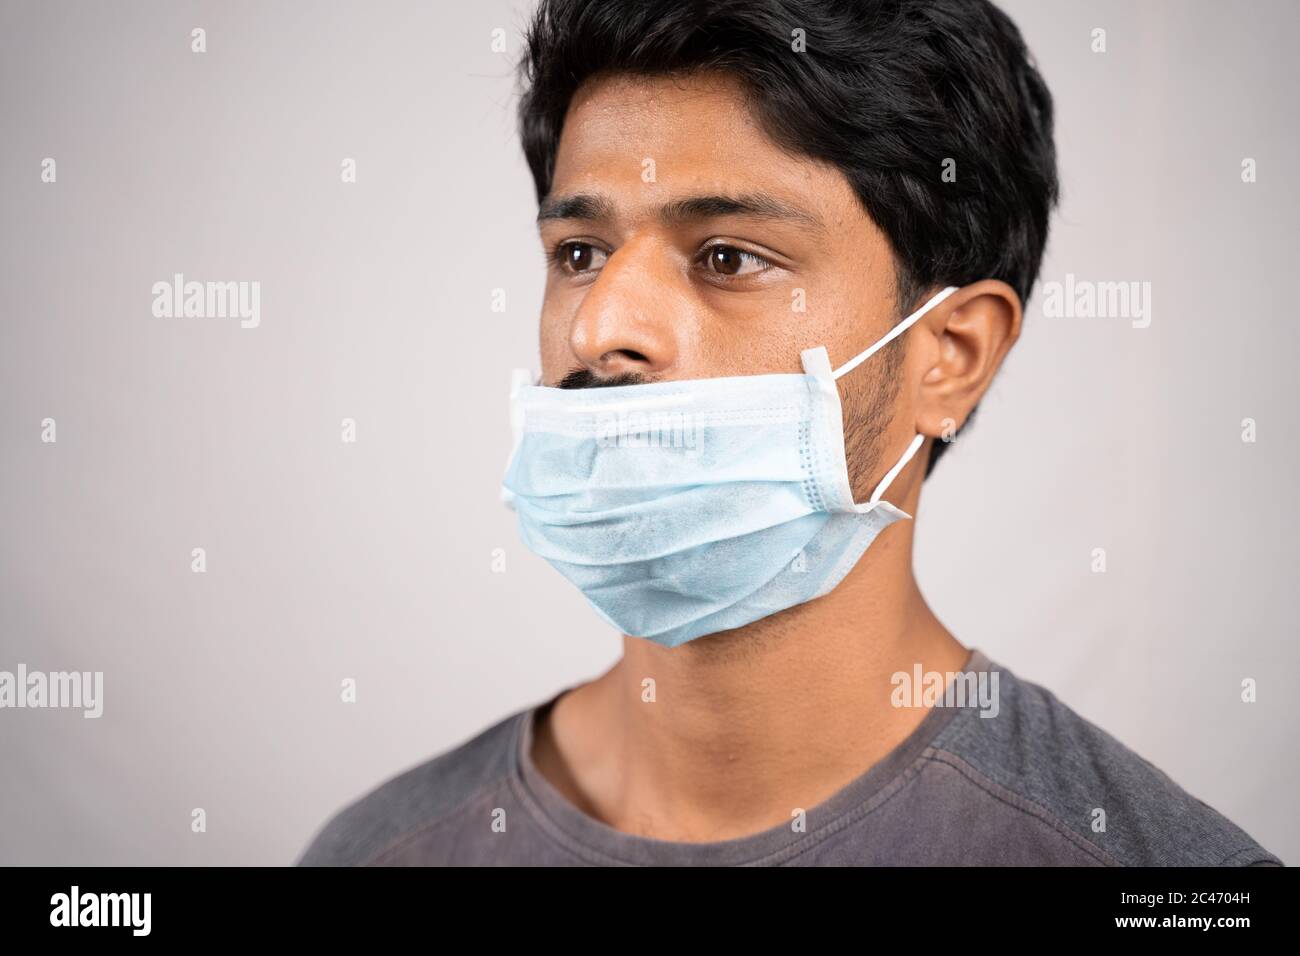 Junger Mann trägt medizinische Maske unter der Nase - Konzept zeigt die unsachgemäße Art der Verwendung von Gesichtsmasken während Coronavirus oder covid-19 Krise. Stockfoto